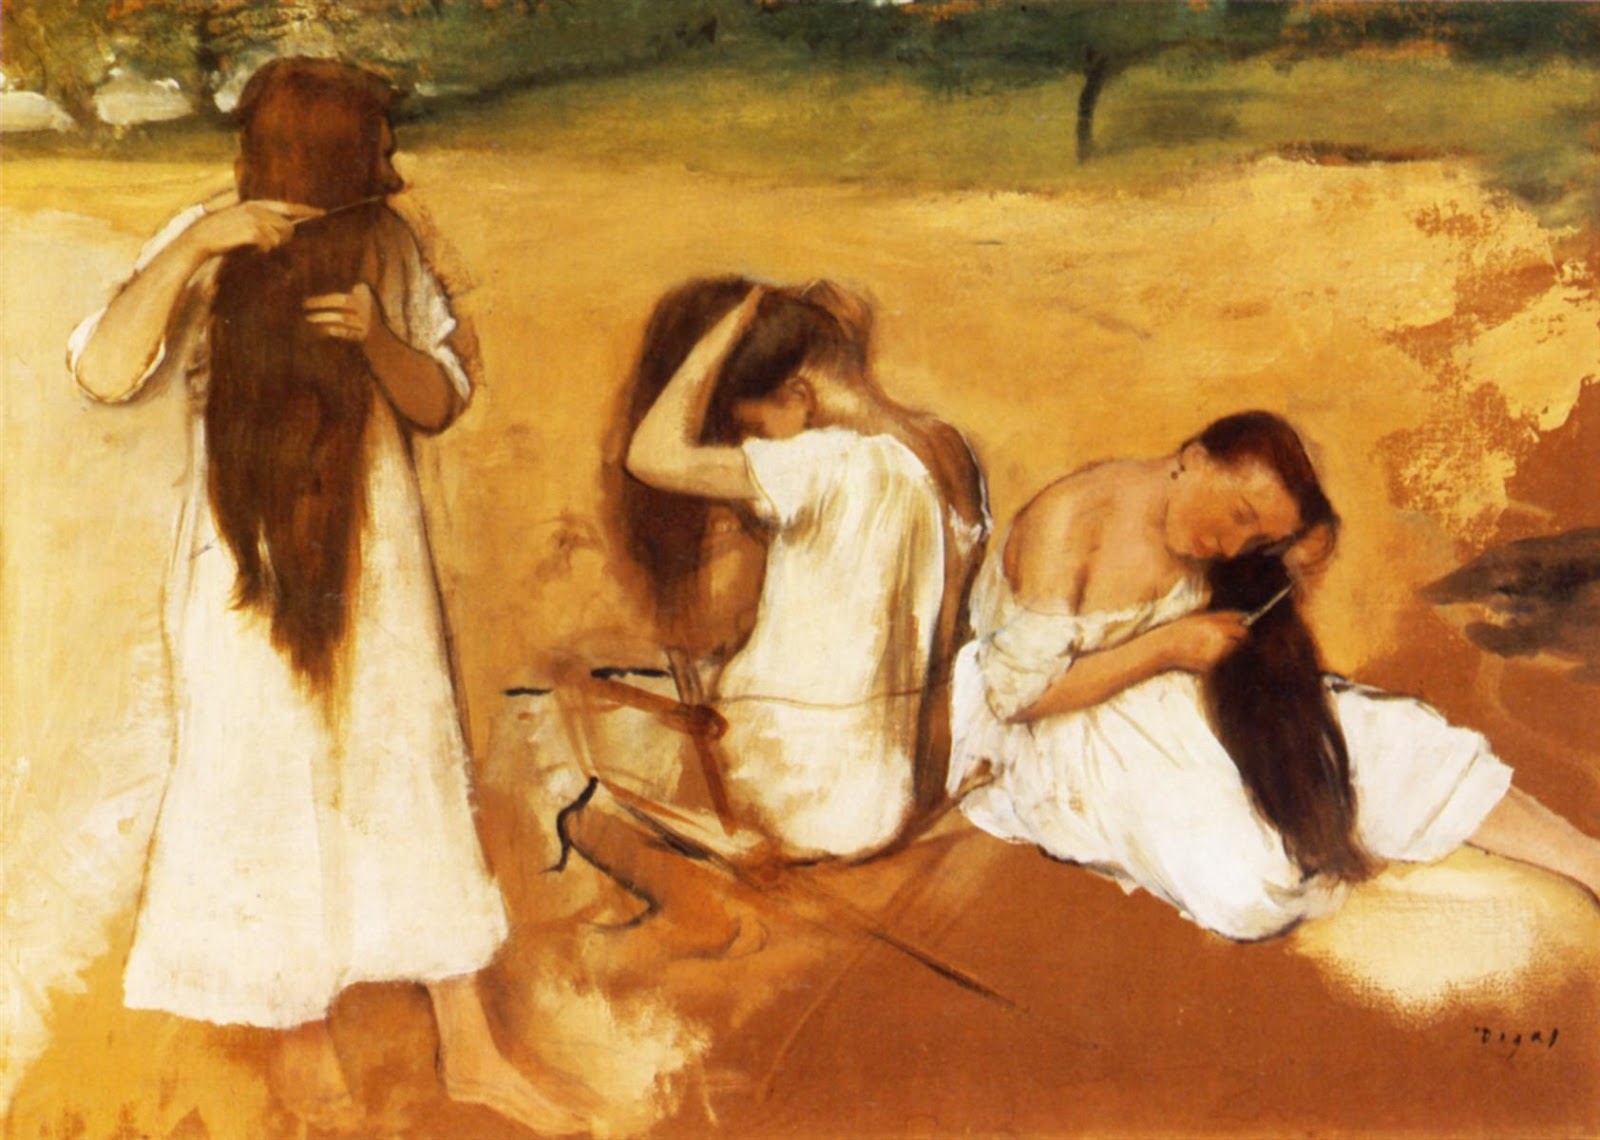 Edgar+Degas-1834-1917 (832).jpg